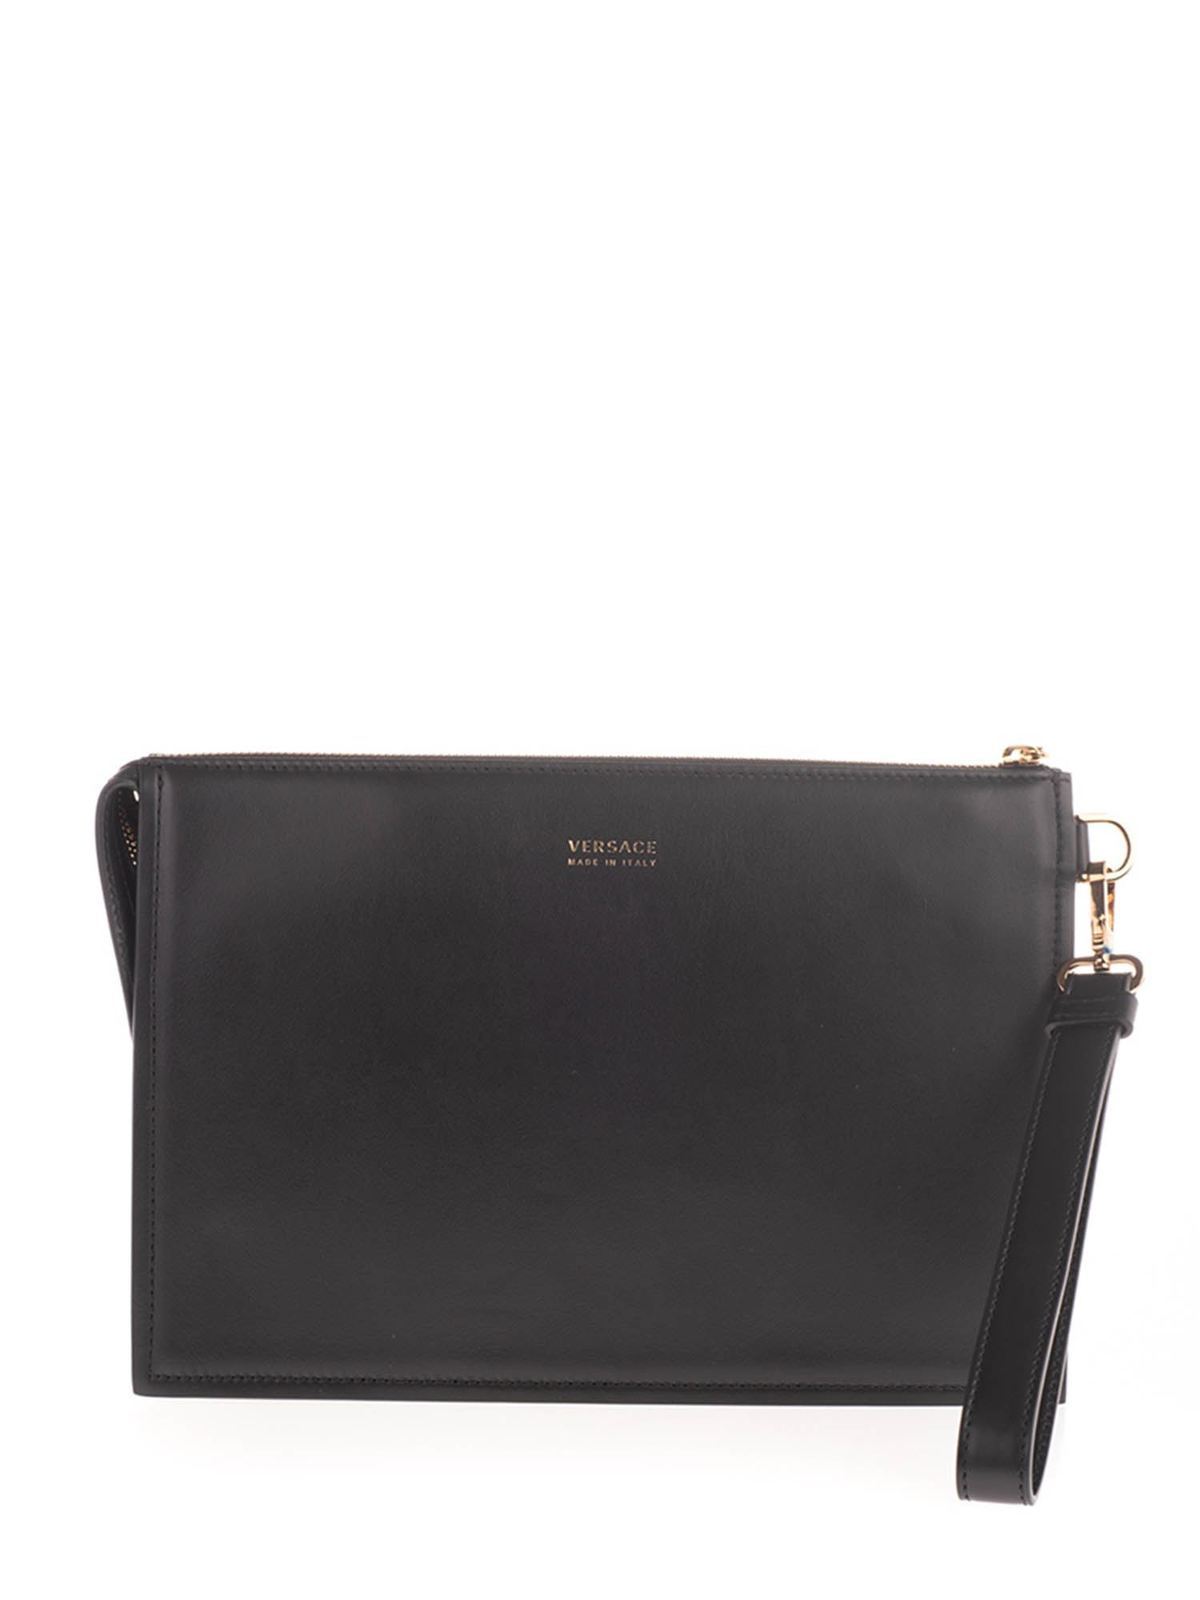 Versace - Golden logo clutch bag in black - clutches - DP87631DVIT88D41TR